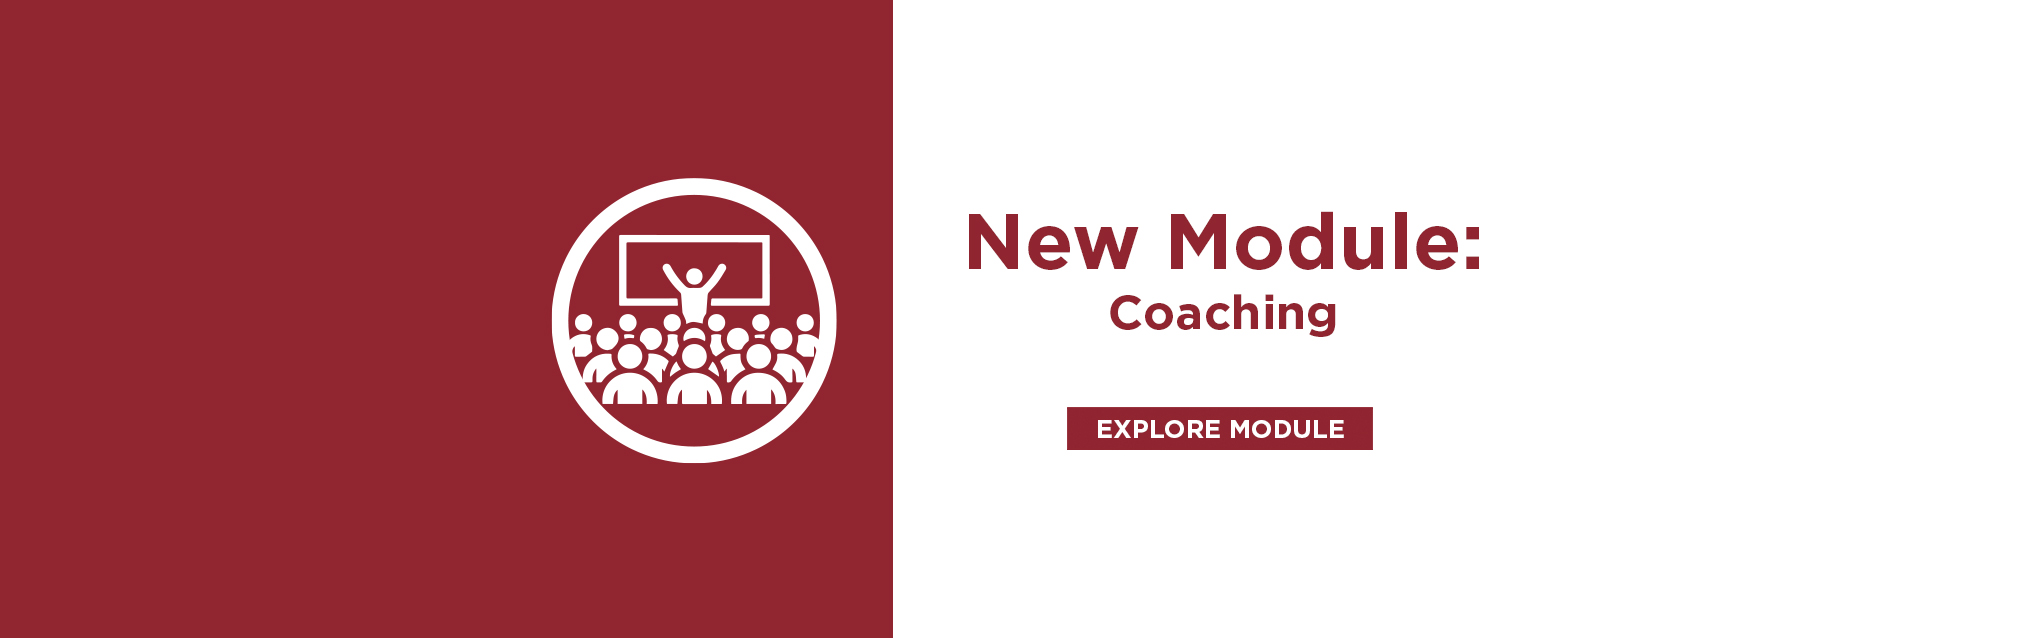 New Module: Coaching